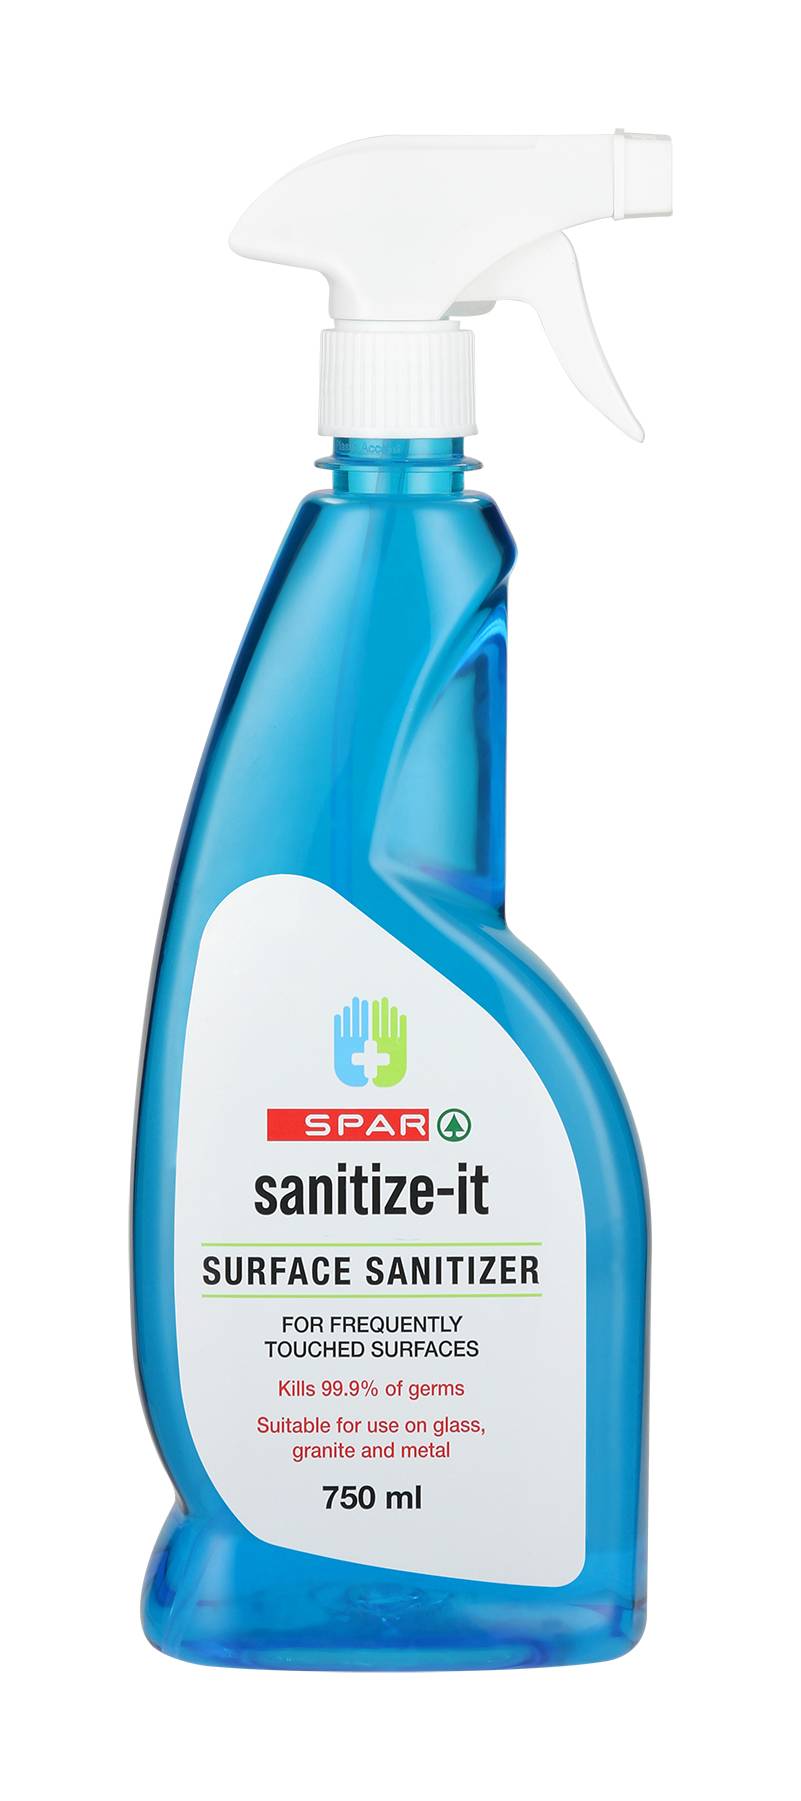 sanitize it surface sanitiser cleaner trigger